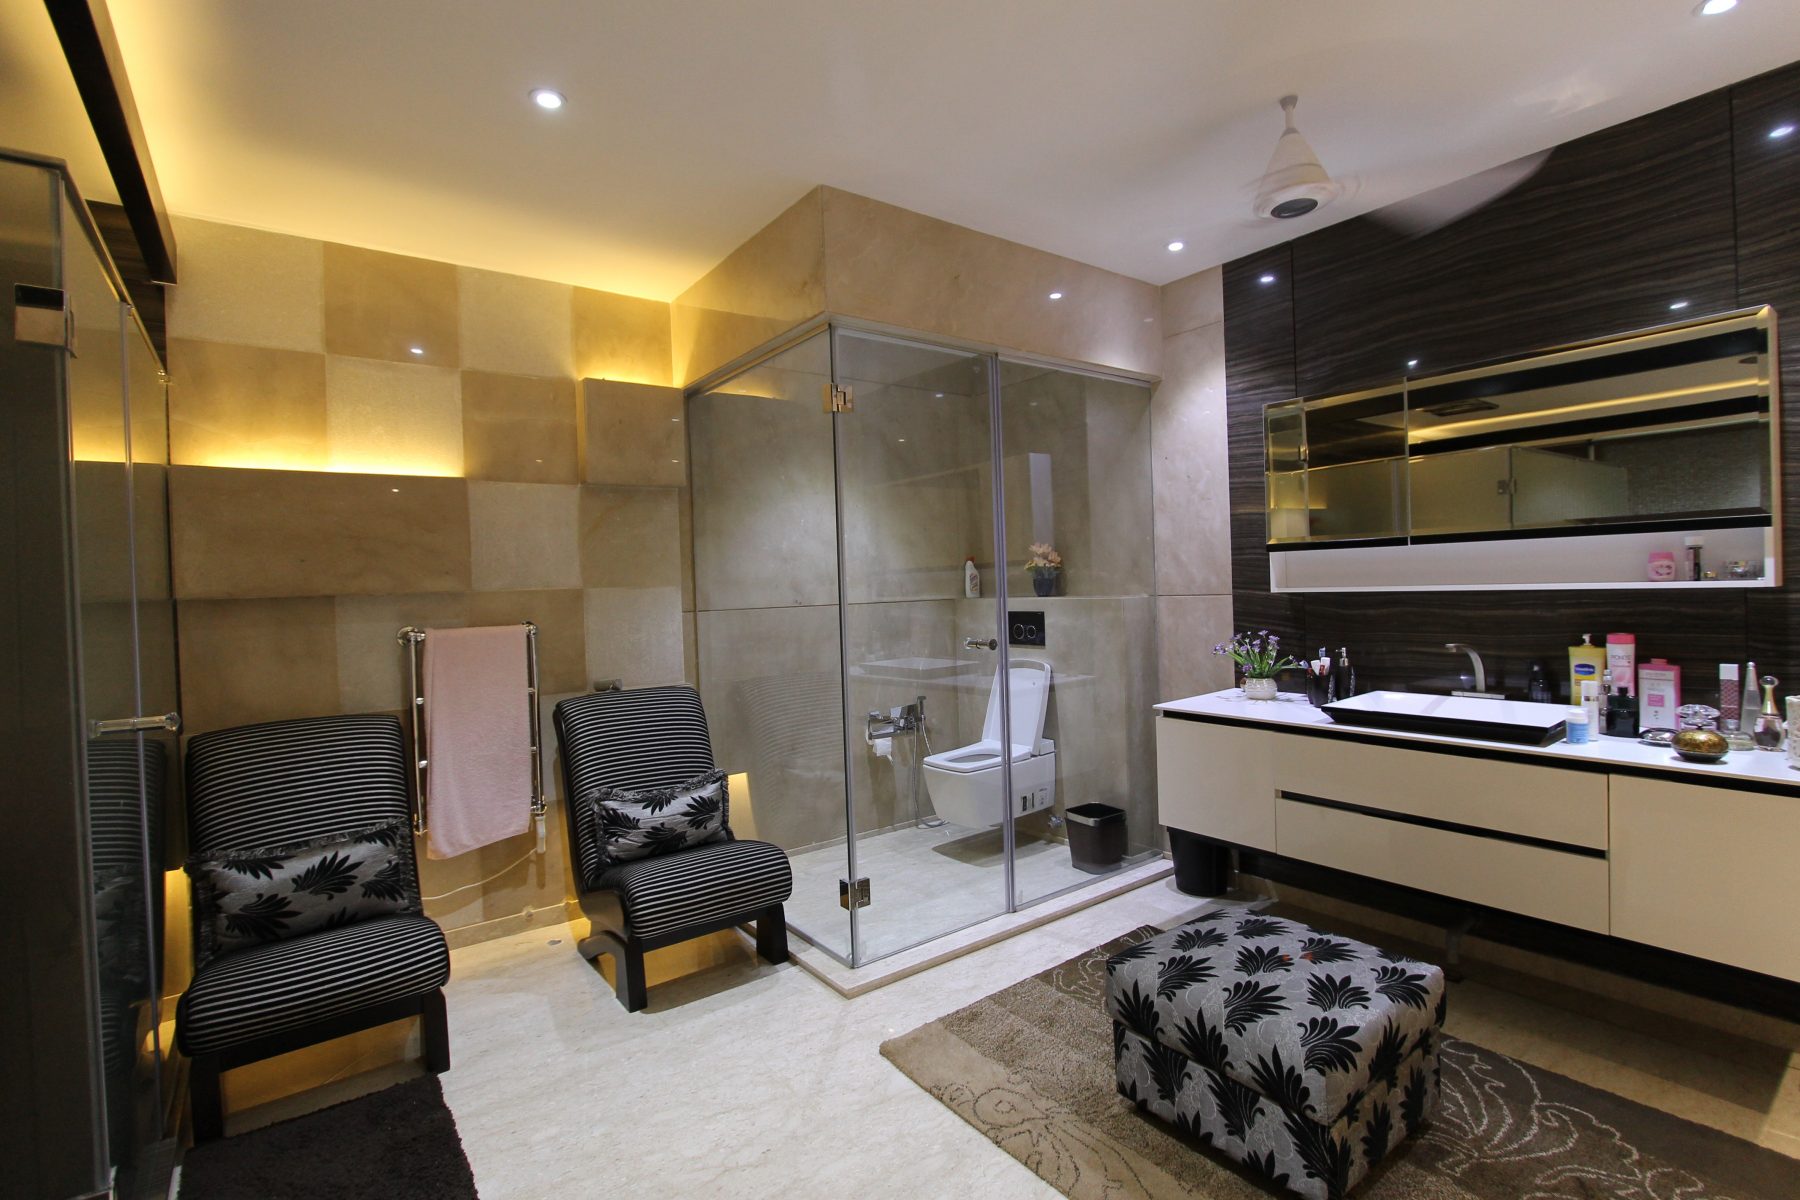 Sahil Nagpal Residence - Master Bathroom